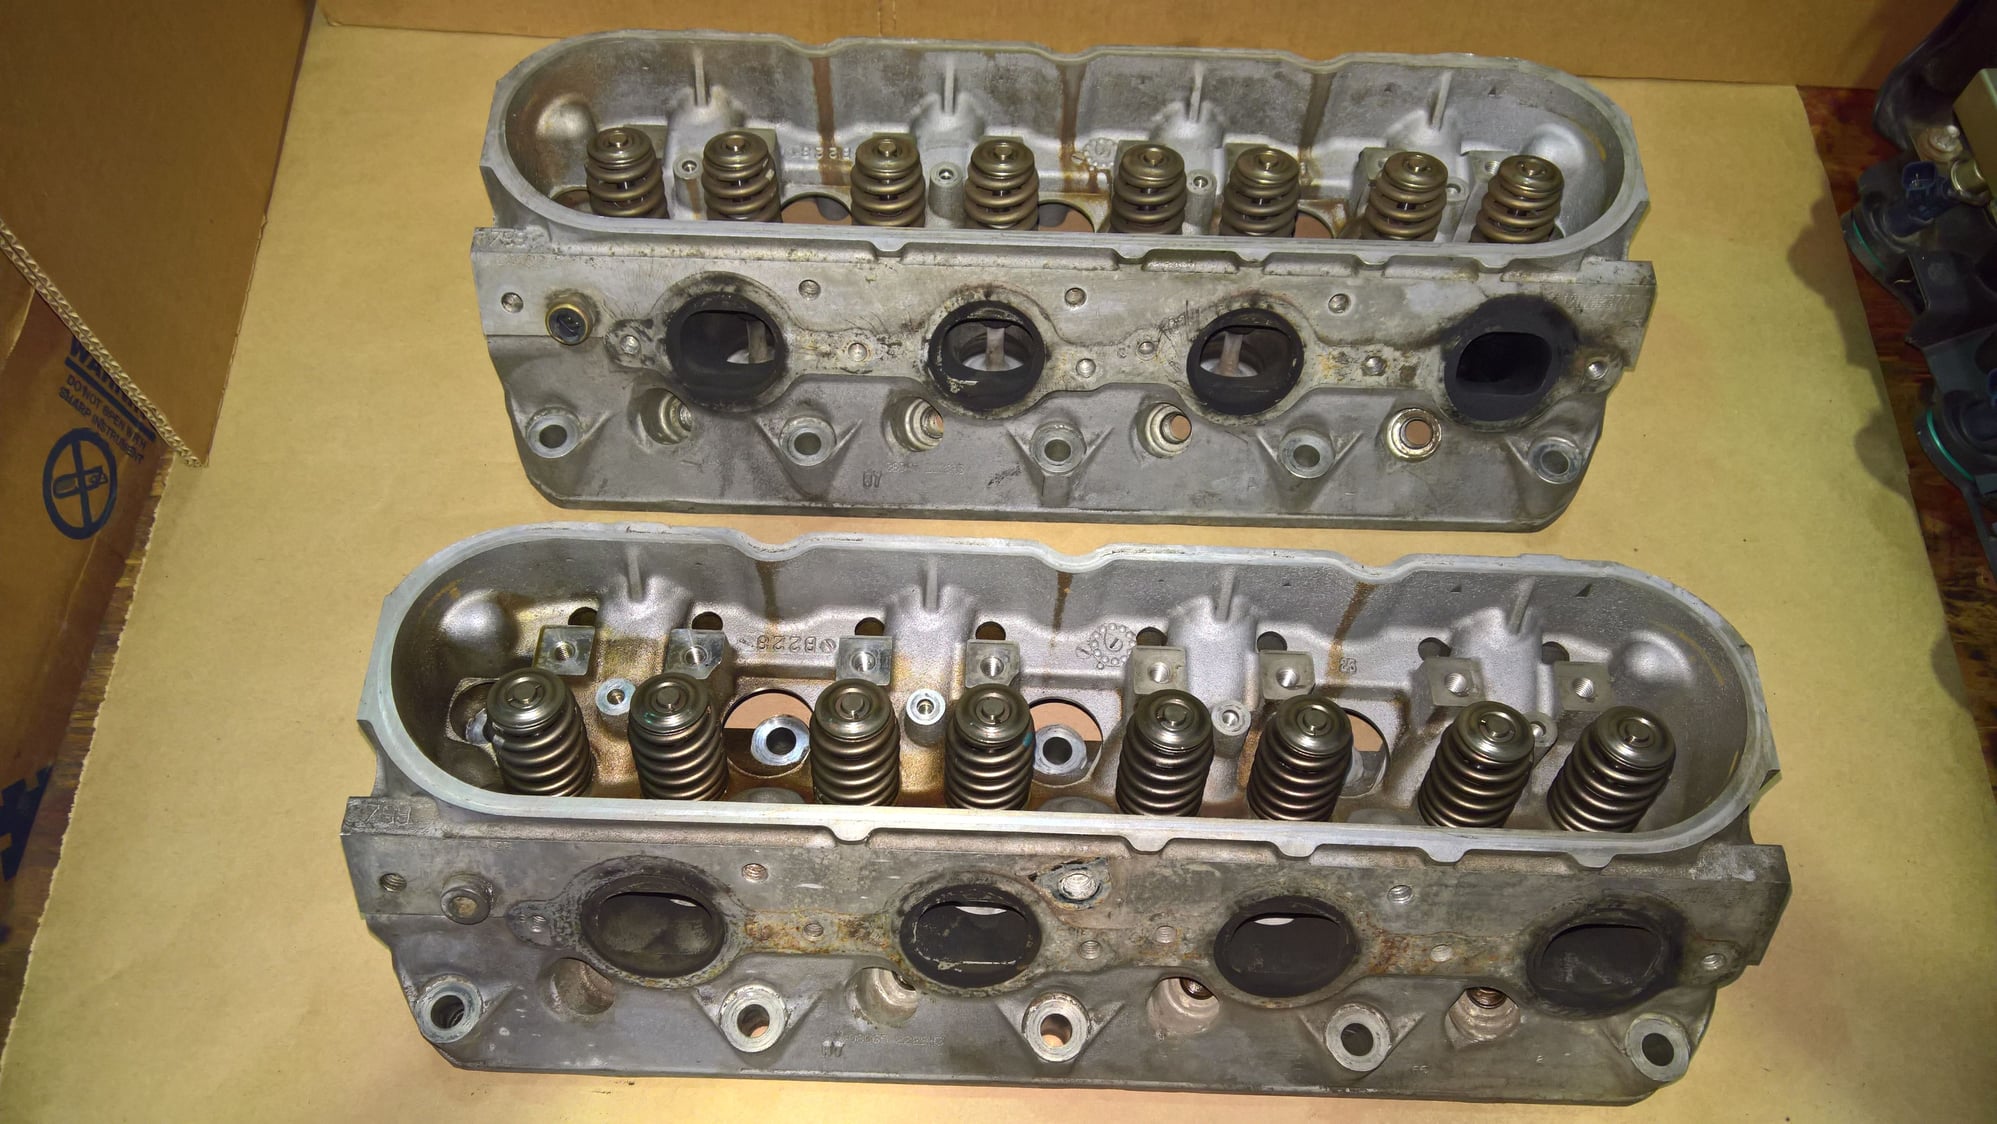 Engine - Internals - Ls2 parts - Used - Westland, MI 48185, United States